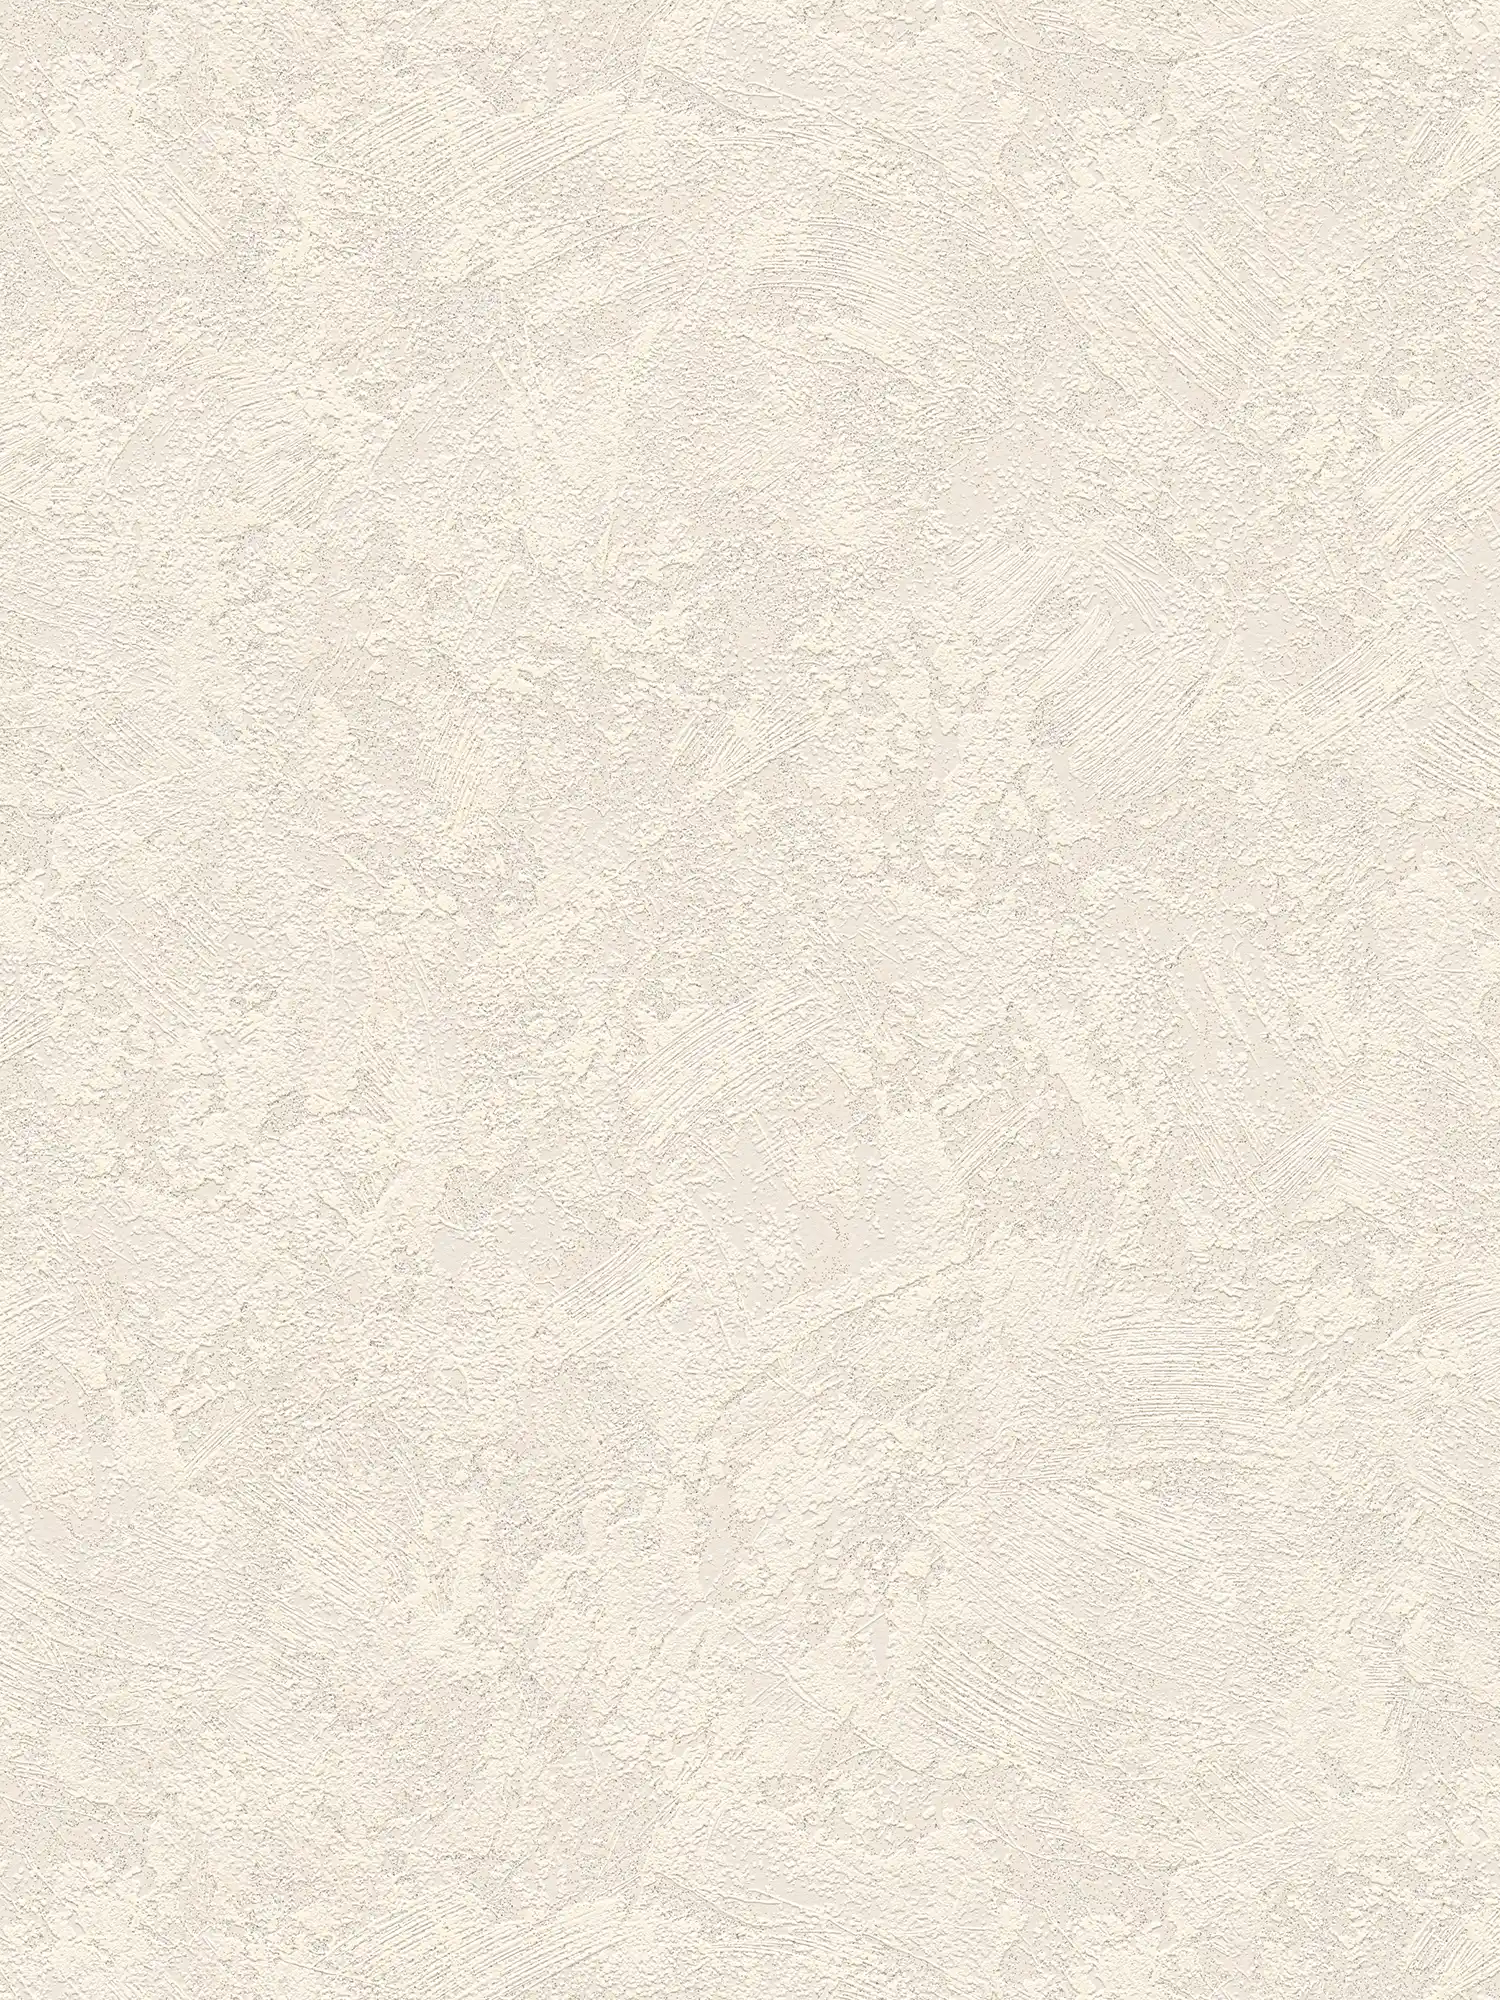 Gipslook vliesbehang met rustieke arceringen - Crème, Grijs
